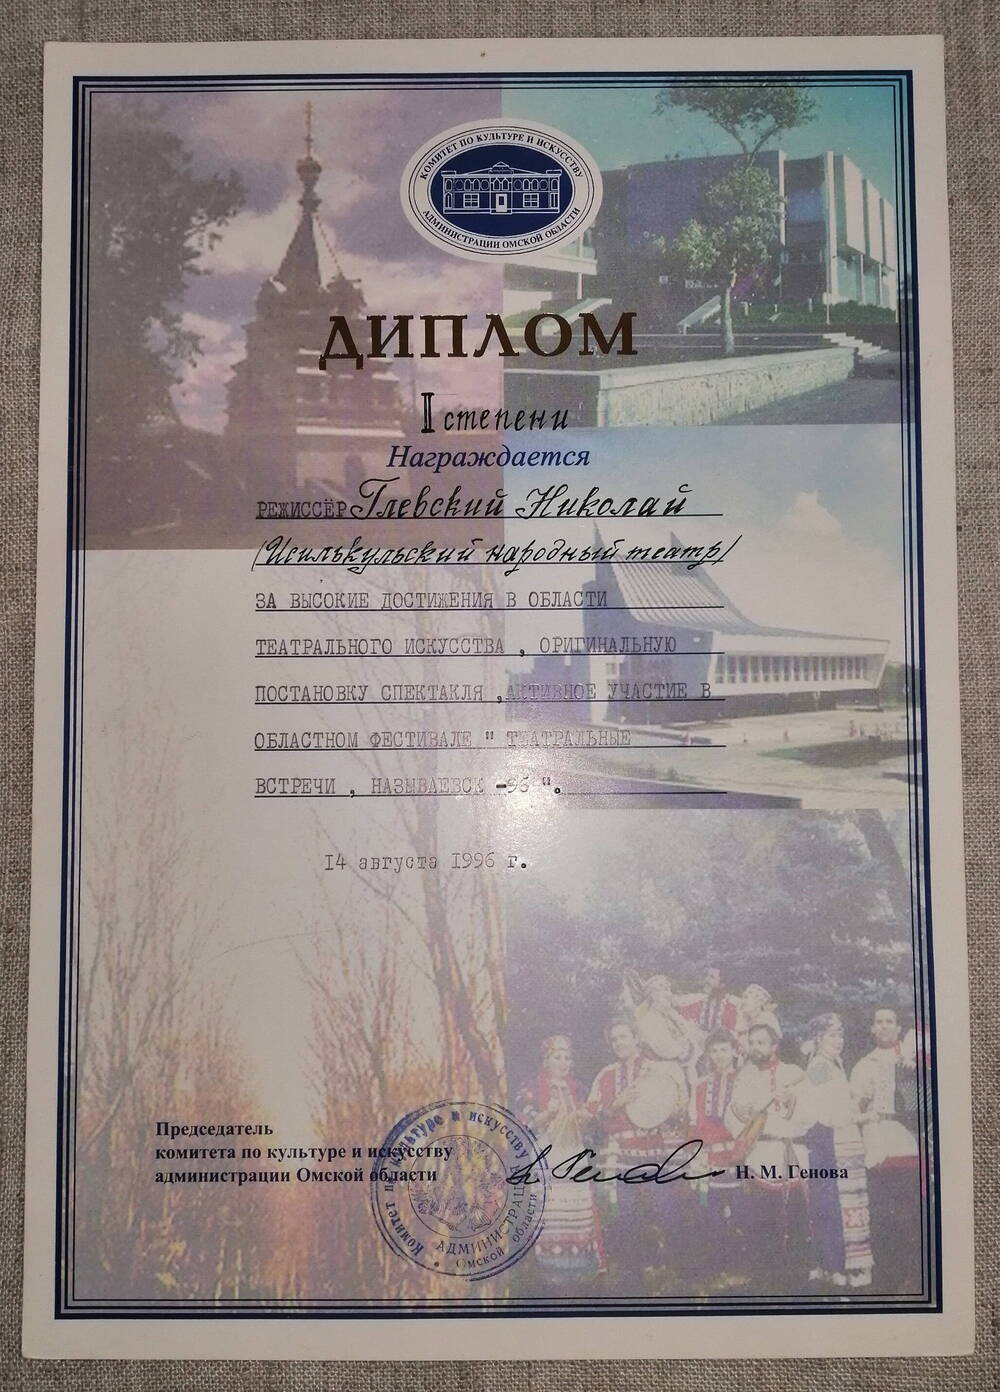 Диплом 1 степени Исилькульскому народному театру .